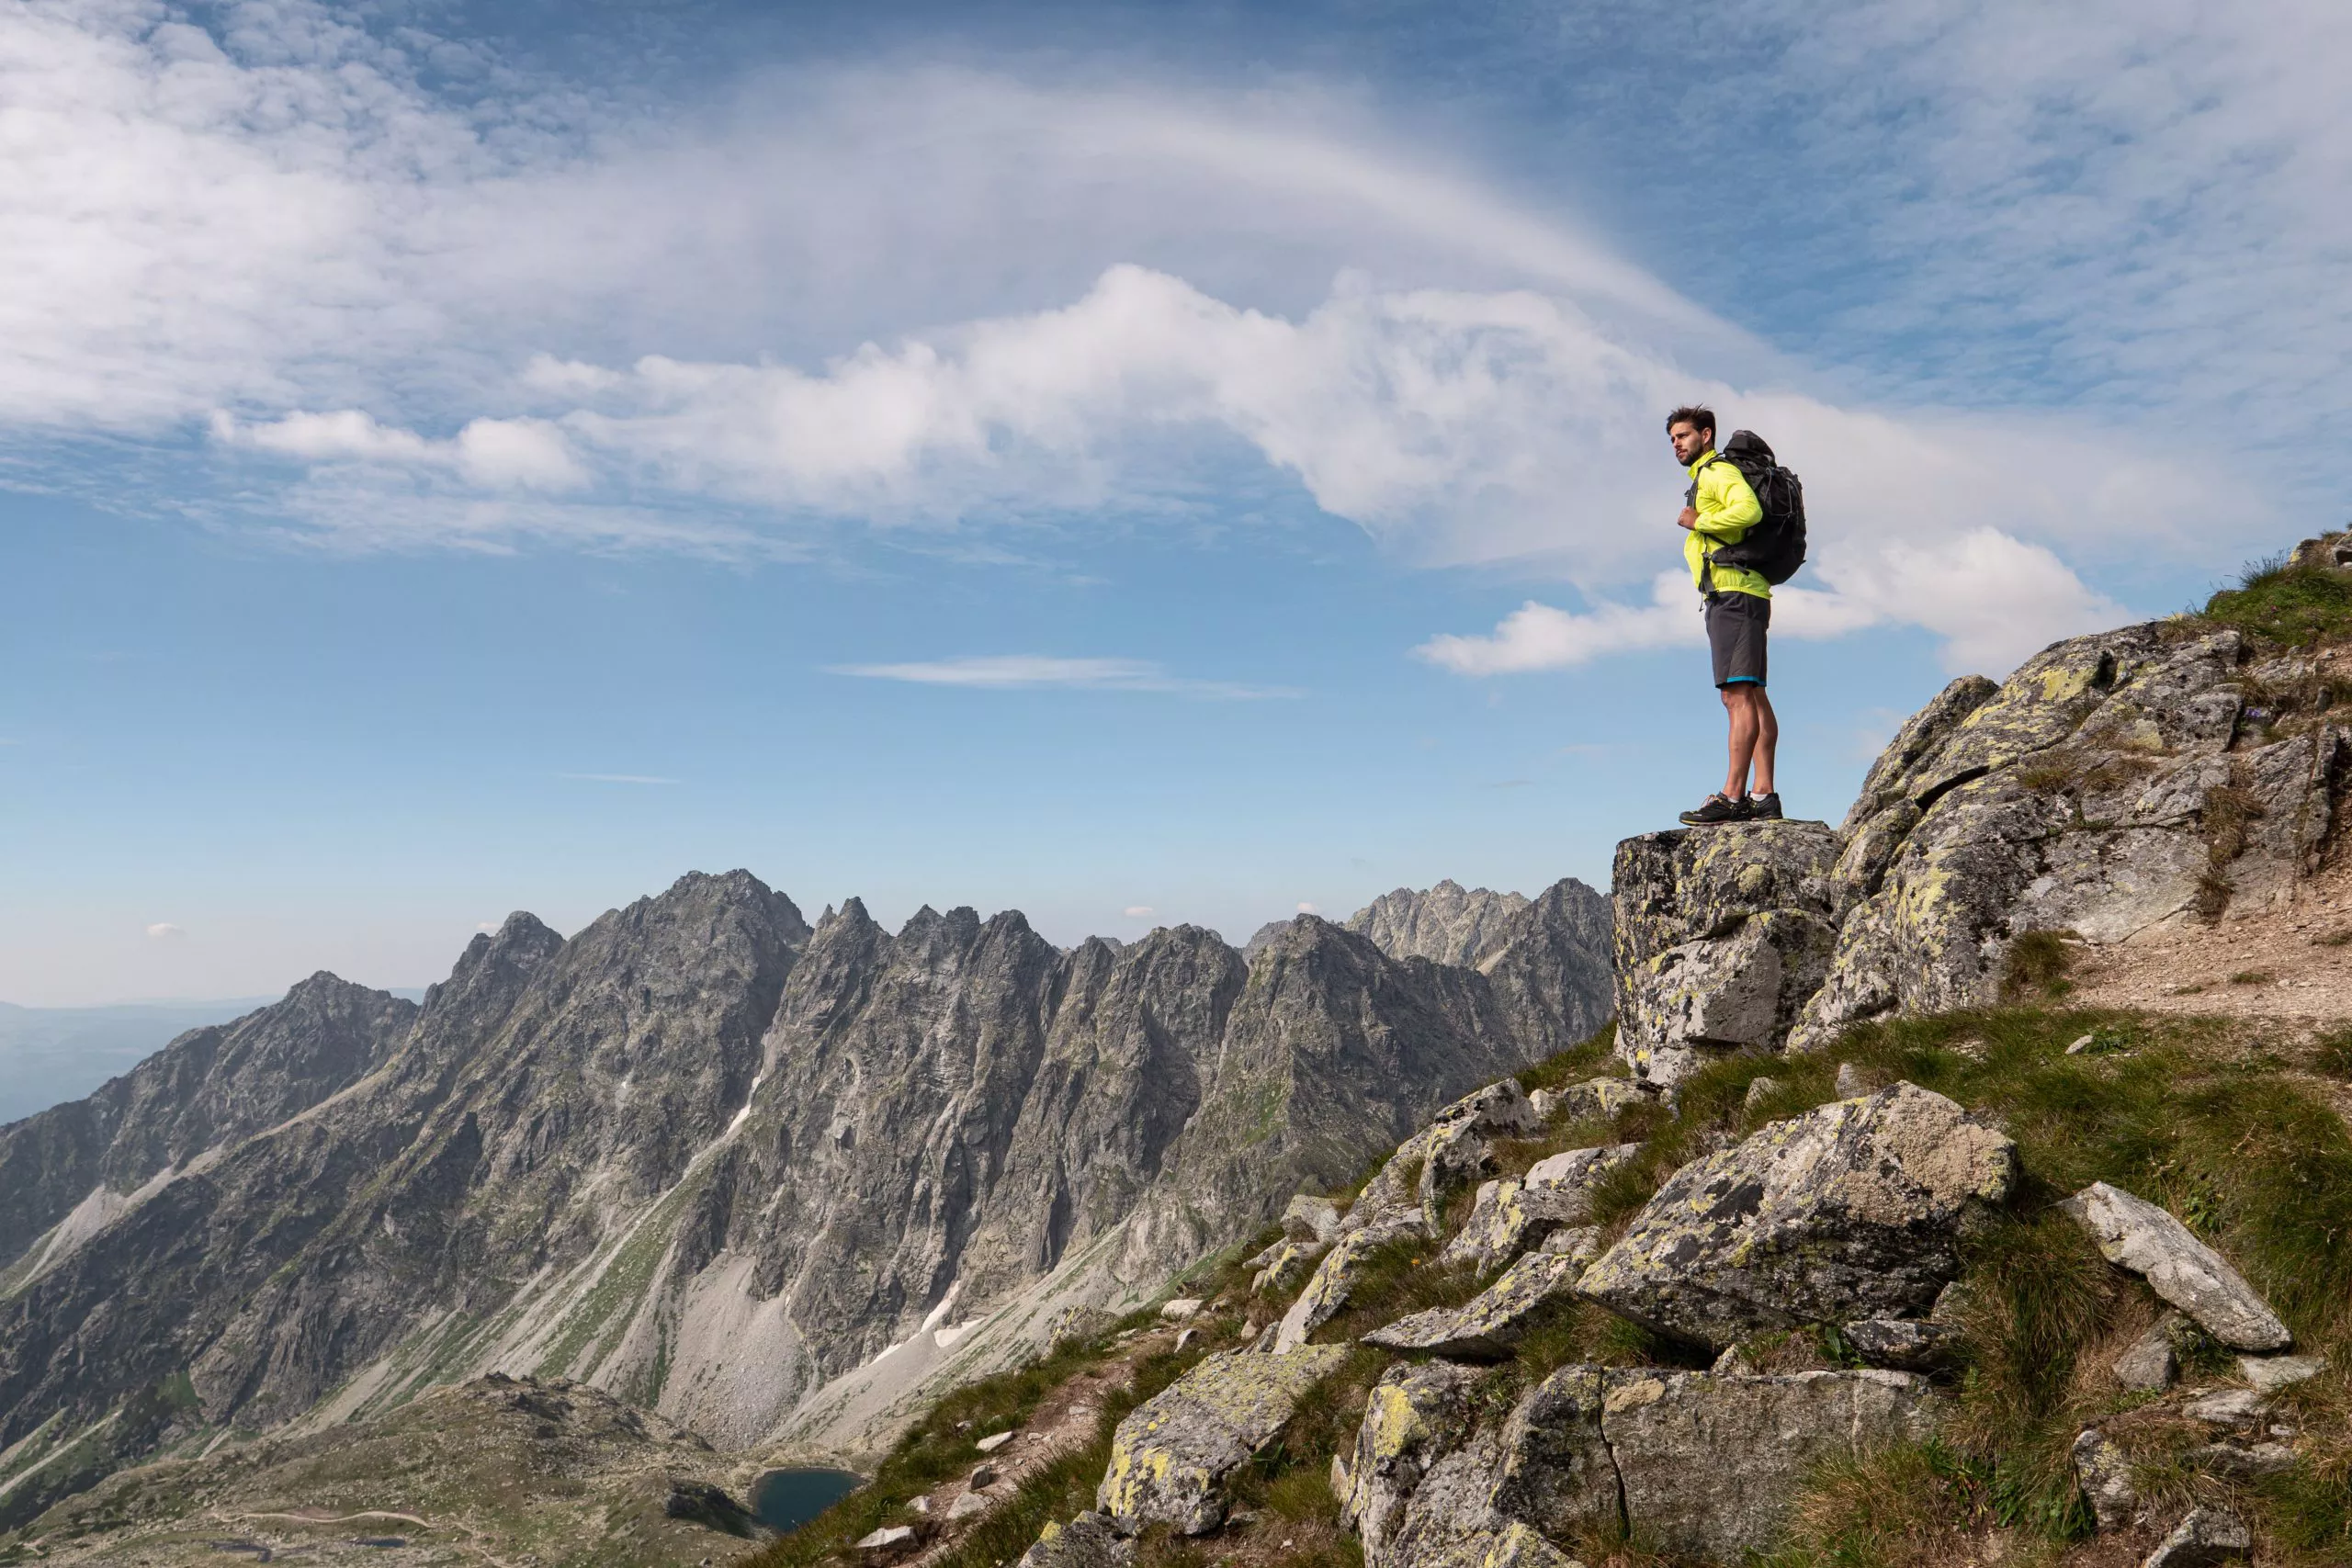 Blick auf einen jungen Mann mit einem großen Rucksack. Der Mann steht auf einem Felsen und schaut in die Ferne. Ringsherum sind die Gipfel der Tatra zu sehen, im Tal ist das Fragment eines Sees zu erkennen, und in den Rinnen sind Spuren von Schnee zu sehen. Der Himmel ist wunderschön blau, von mittelgroßen weißen Wolken bedeckt.